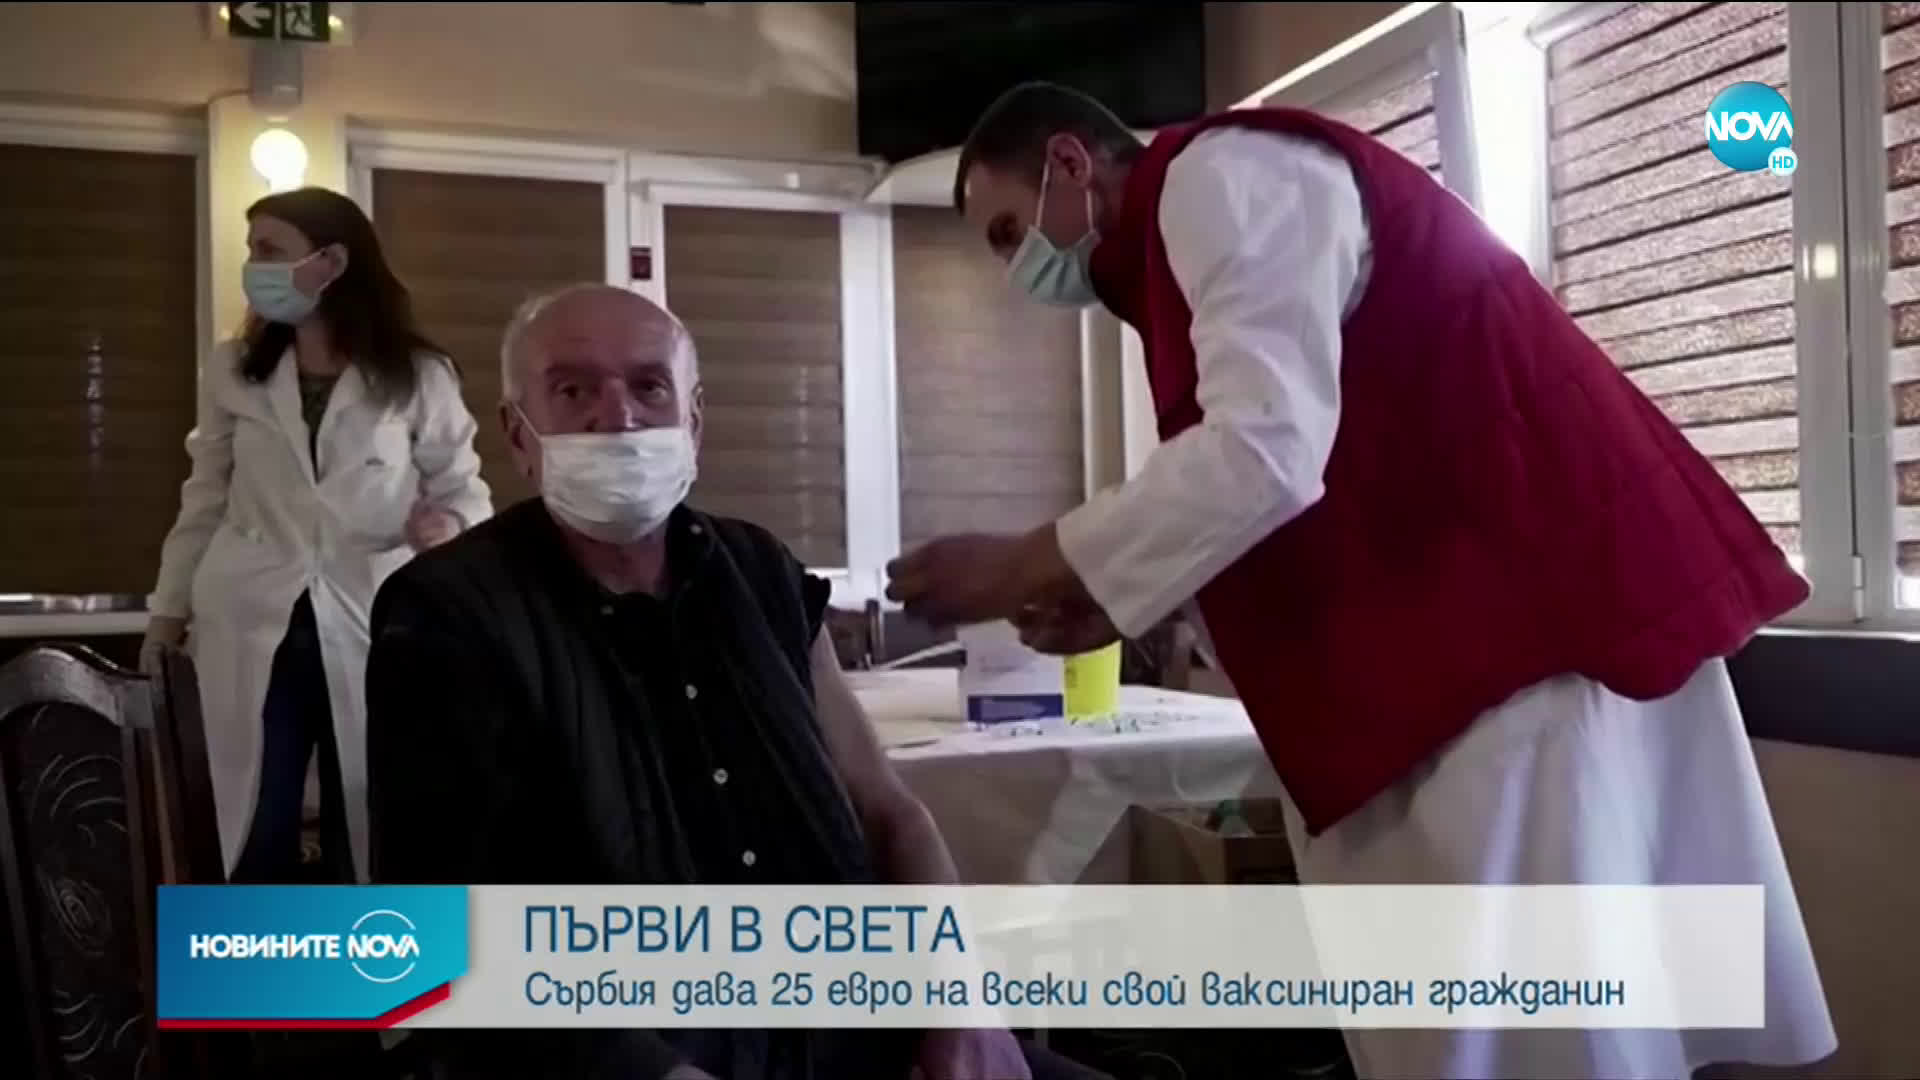 ПЪРВИ В СВЕТА: Сърбия дава 25 евро на всеки свой ваксиниран гражданин